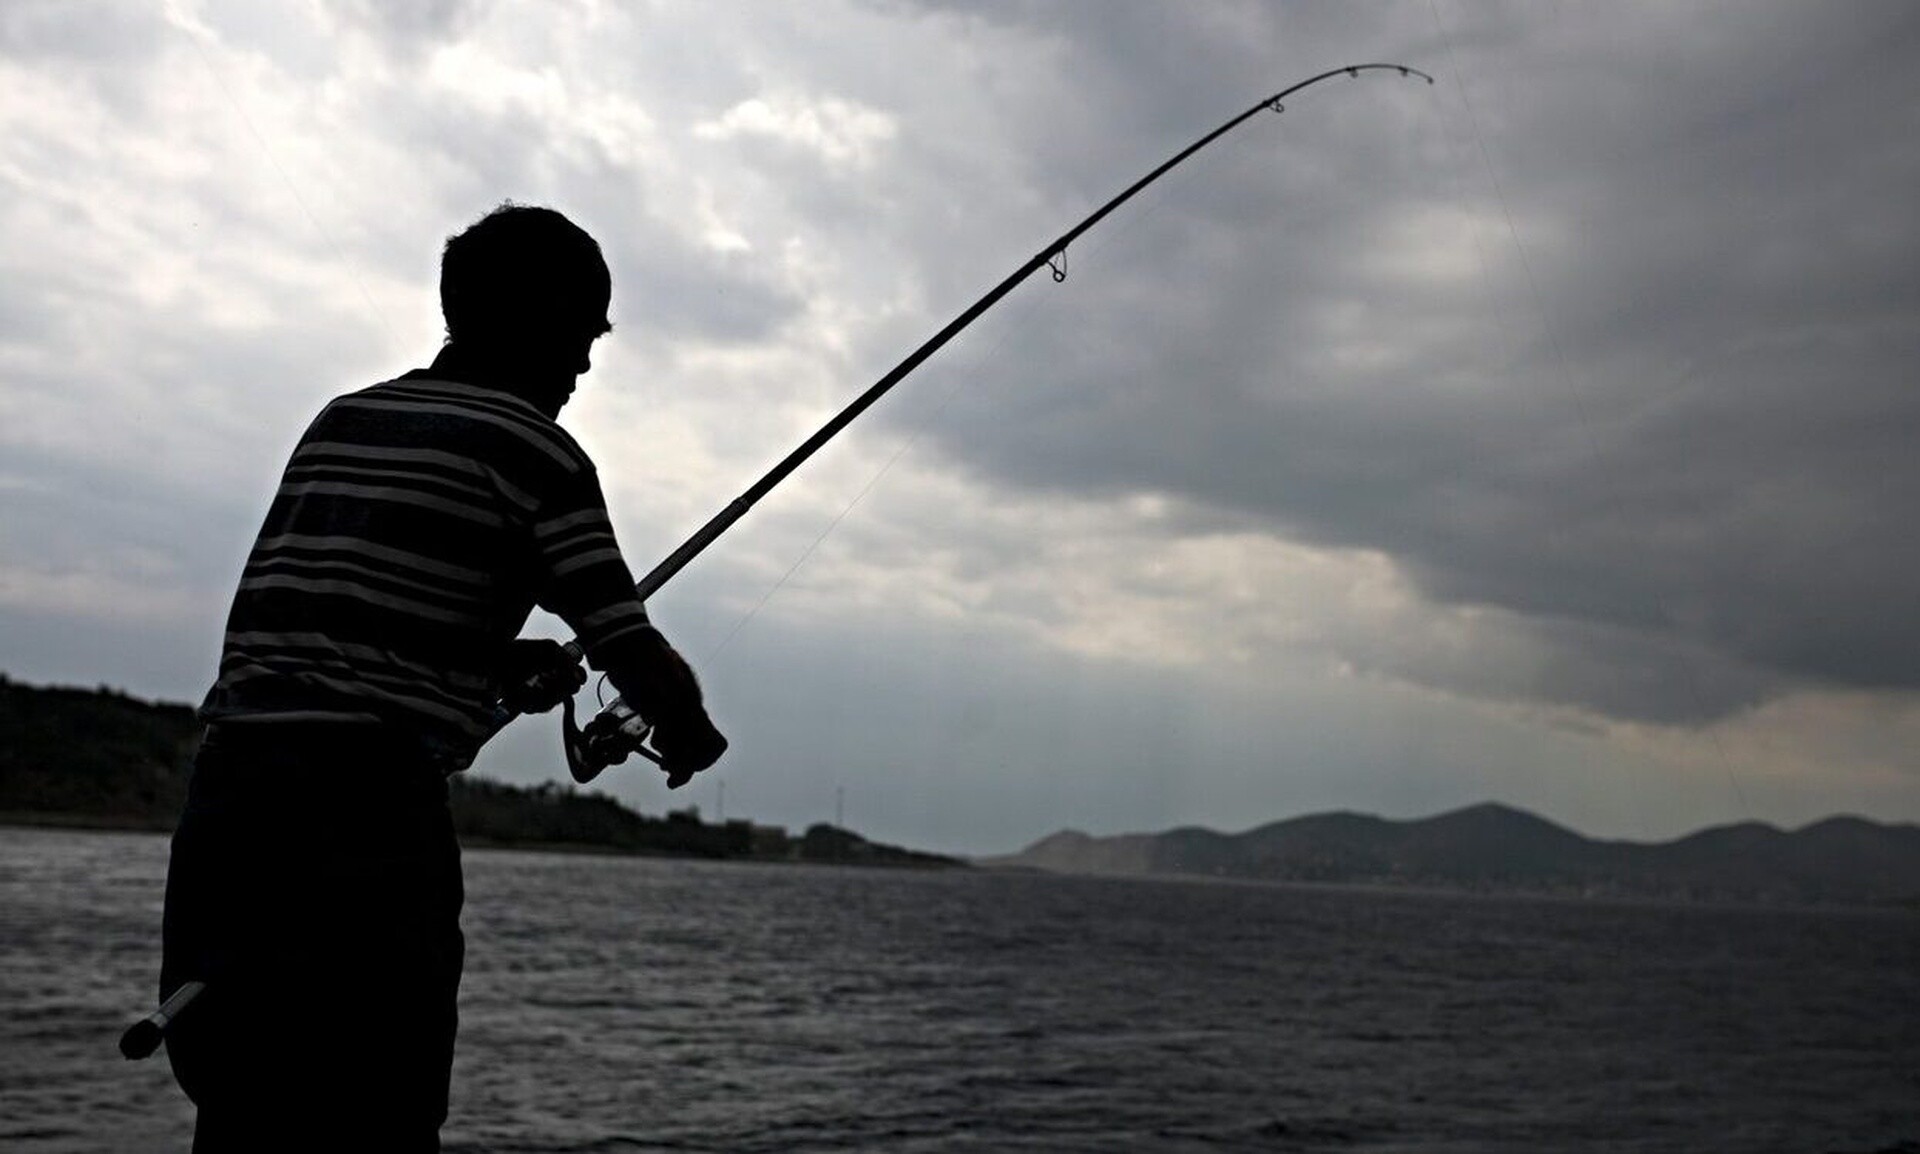 Ψάρεμα: Σοκ για τους ερασιτέχνες αλιείς - Τι αναφέρει ο νέος νόμος